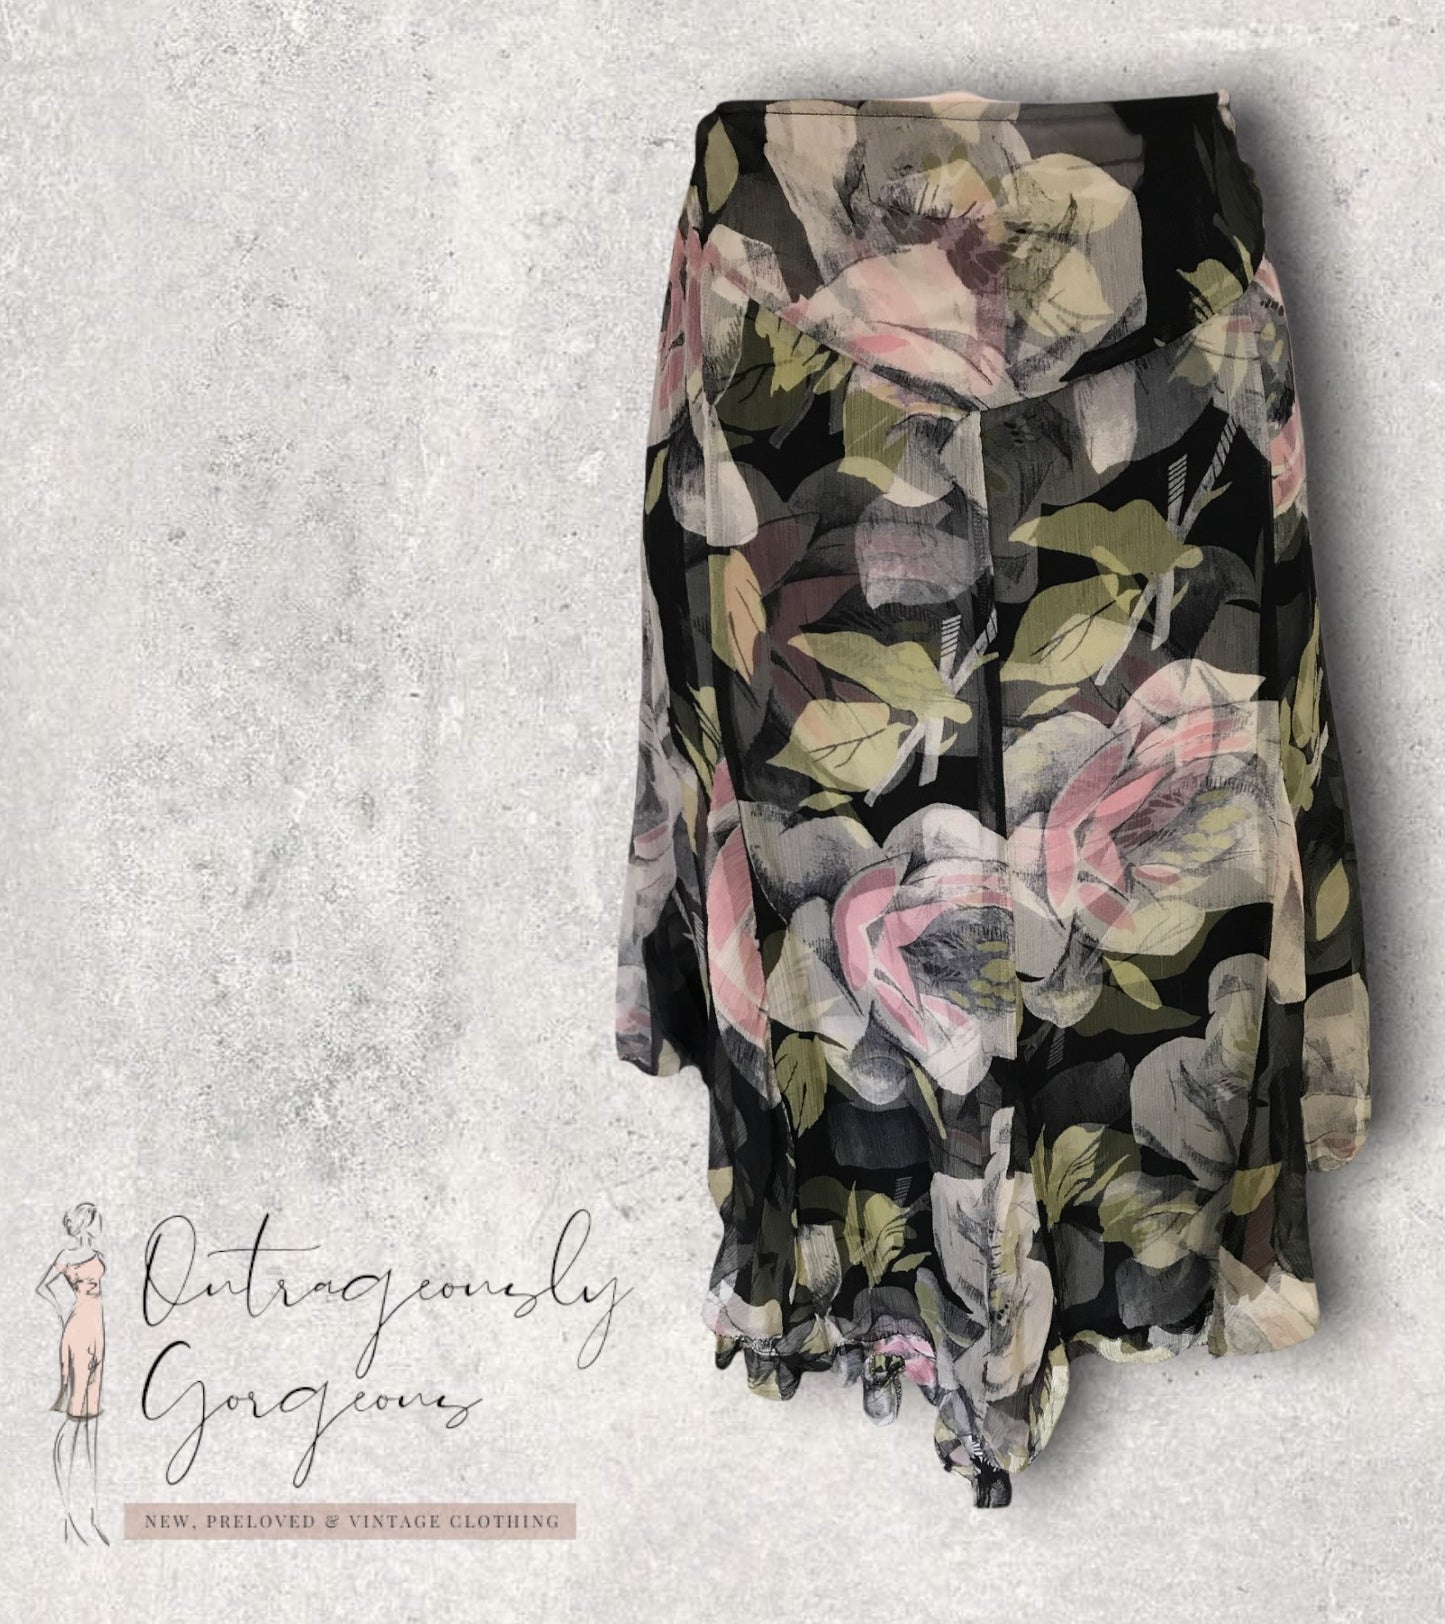 Karen Millen Women's Black Green & Pink Floral Silk Skirt UK 8 US 4 EU 36 Timeless Fashions